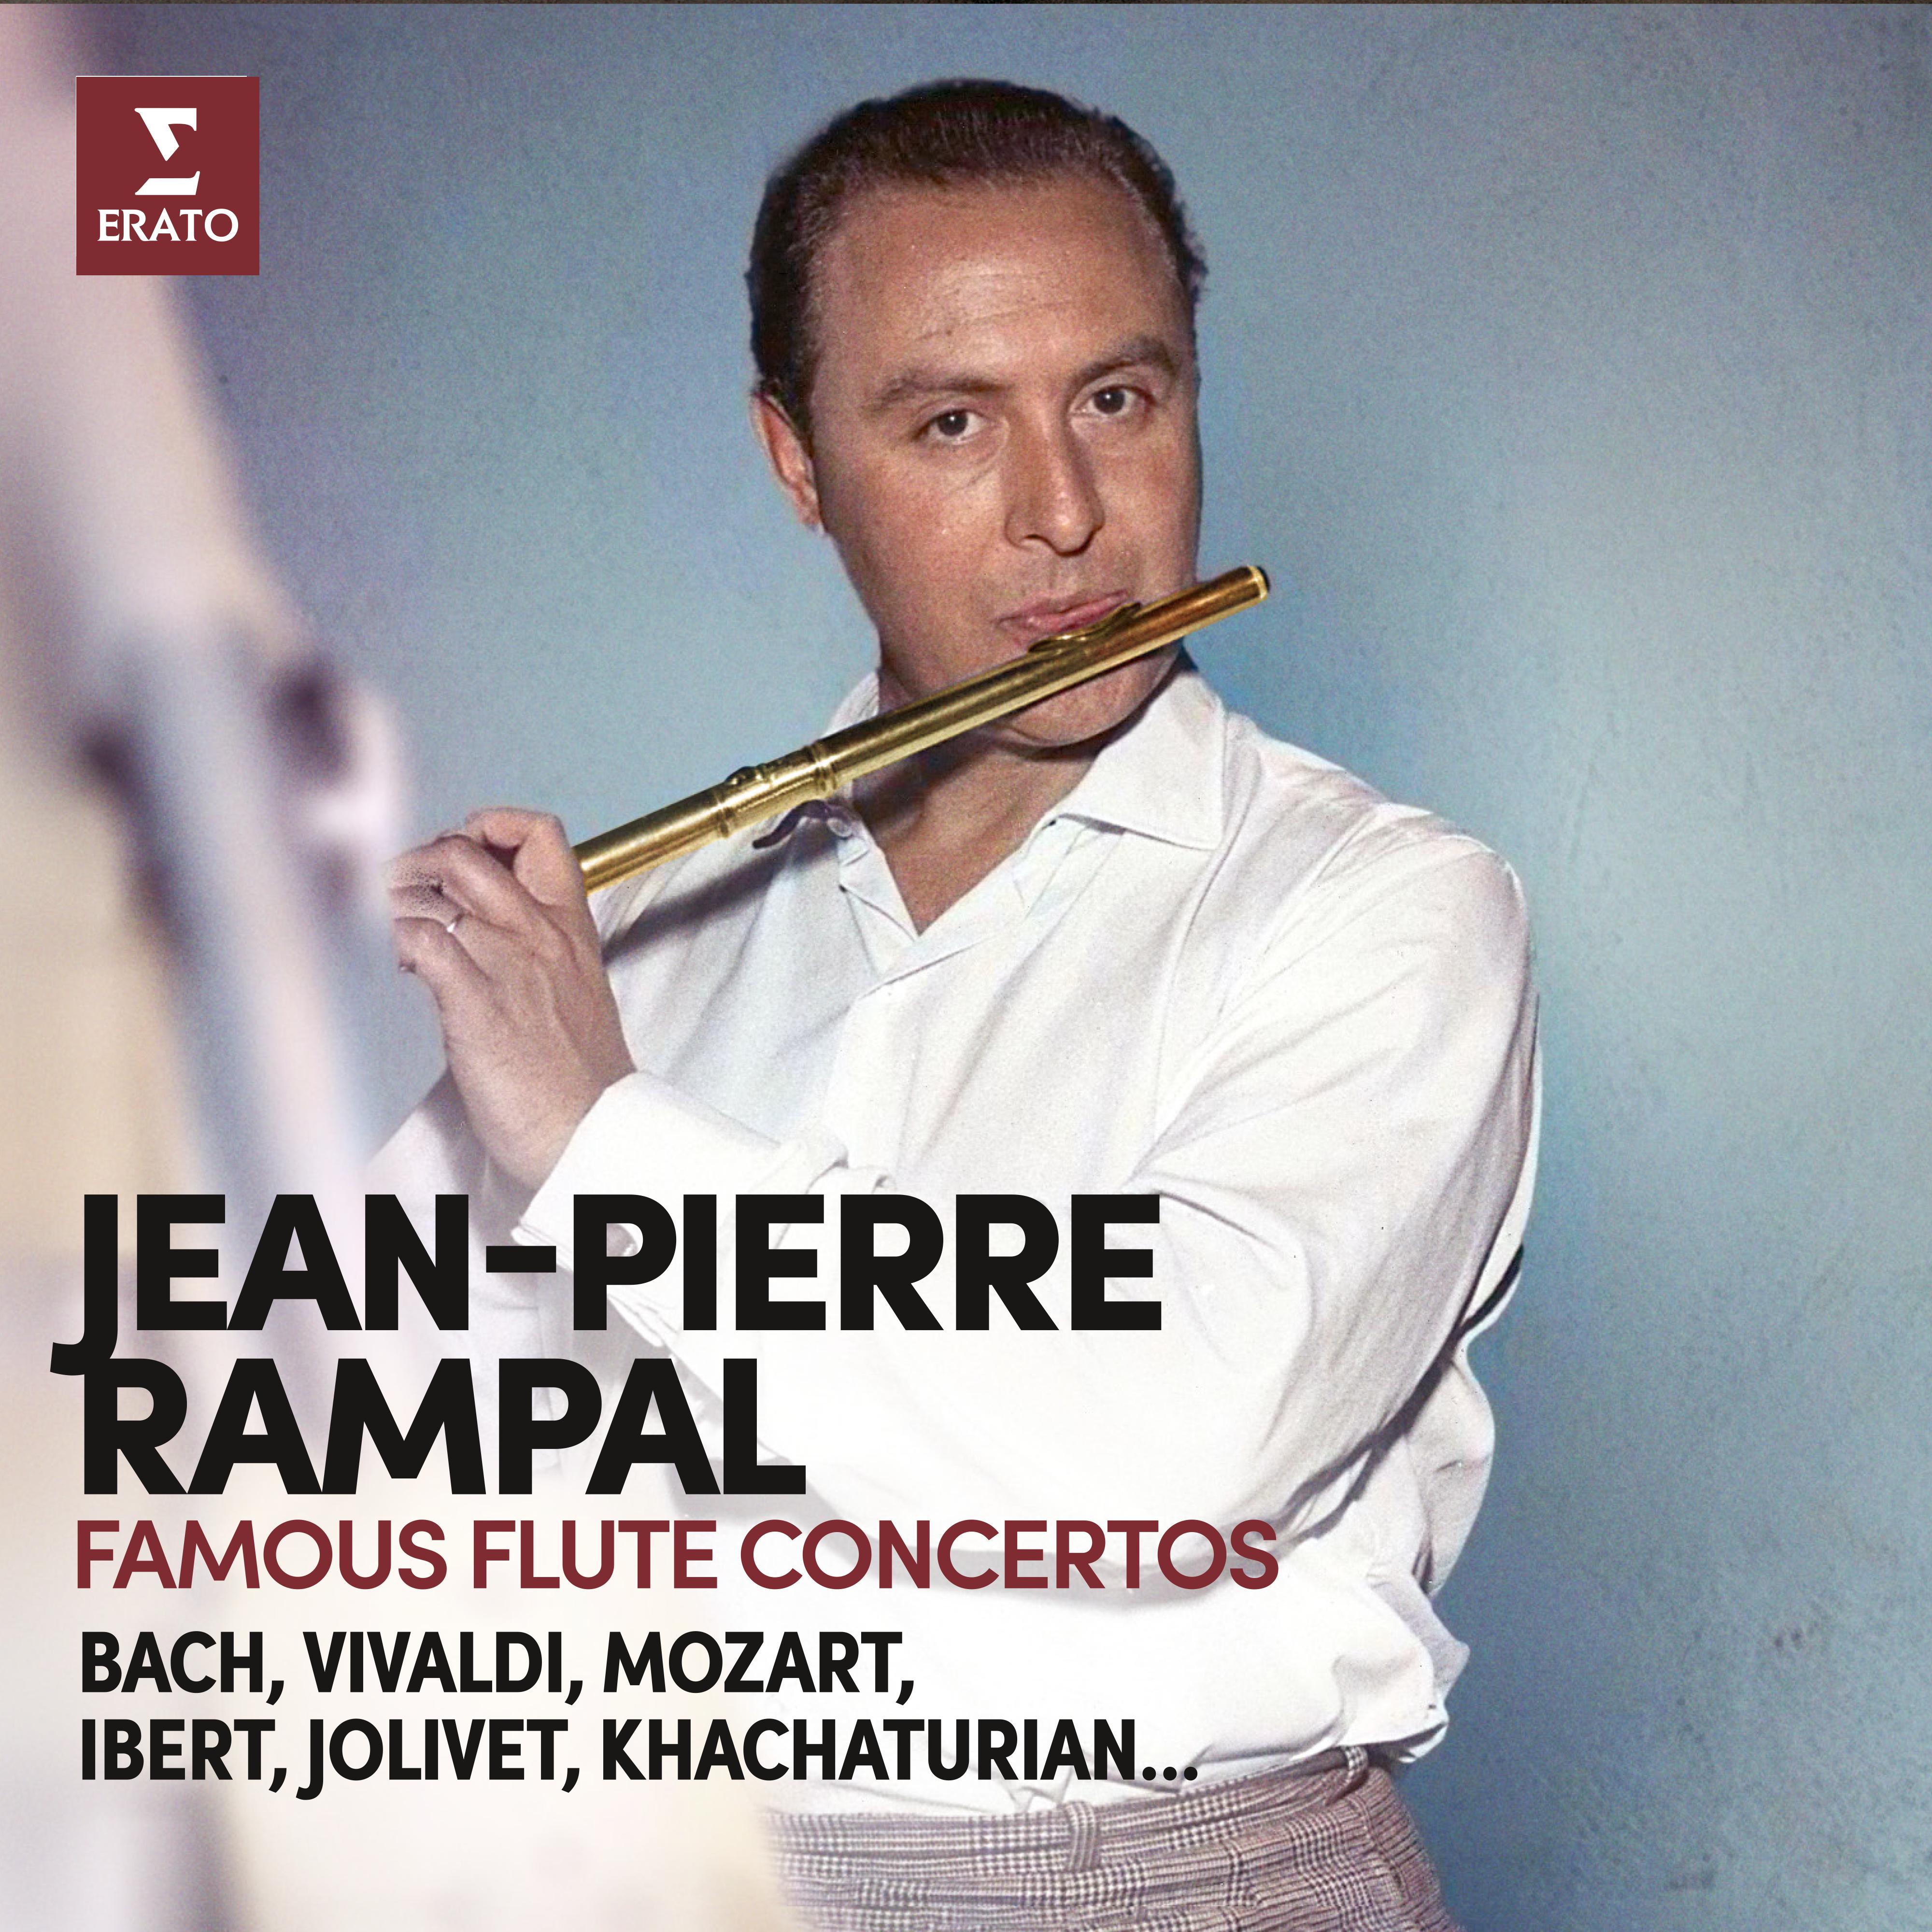 Jean-Pierre Rampal - Flute Concerto in C Major, Op. 17 No. 3:I. Gaiement